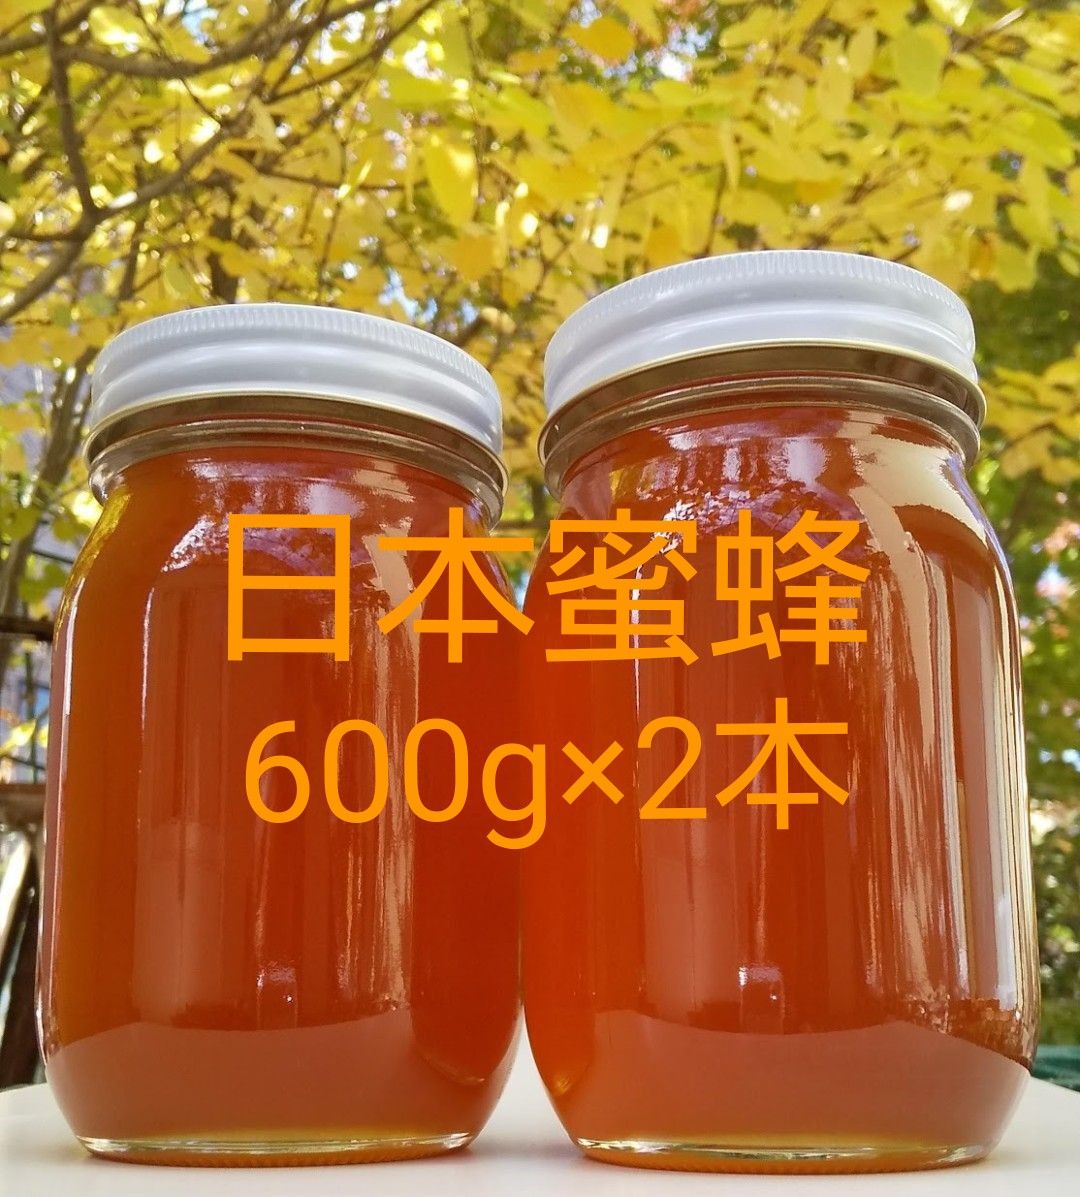 日本蜜蜂(秋採れ熟成生蜂蜜)1200g(600g×2本) 純粋蜂蜜 非加熱-